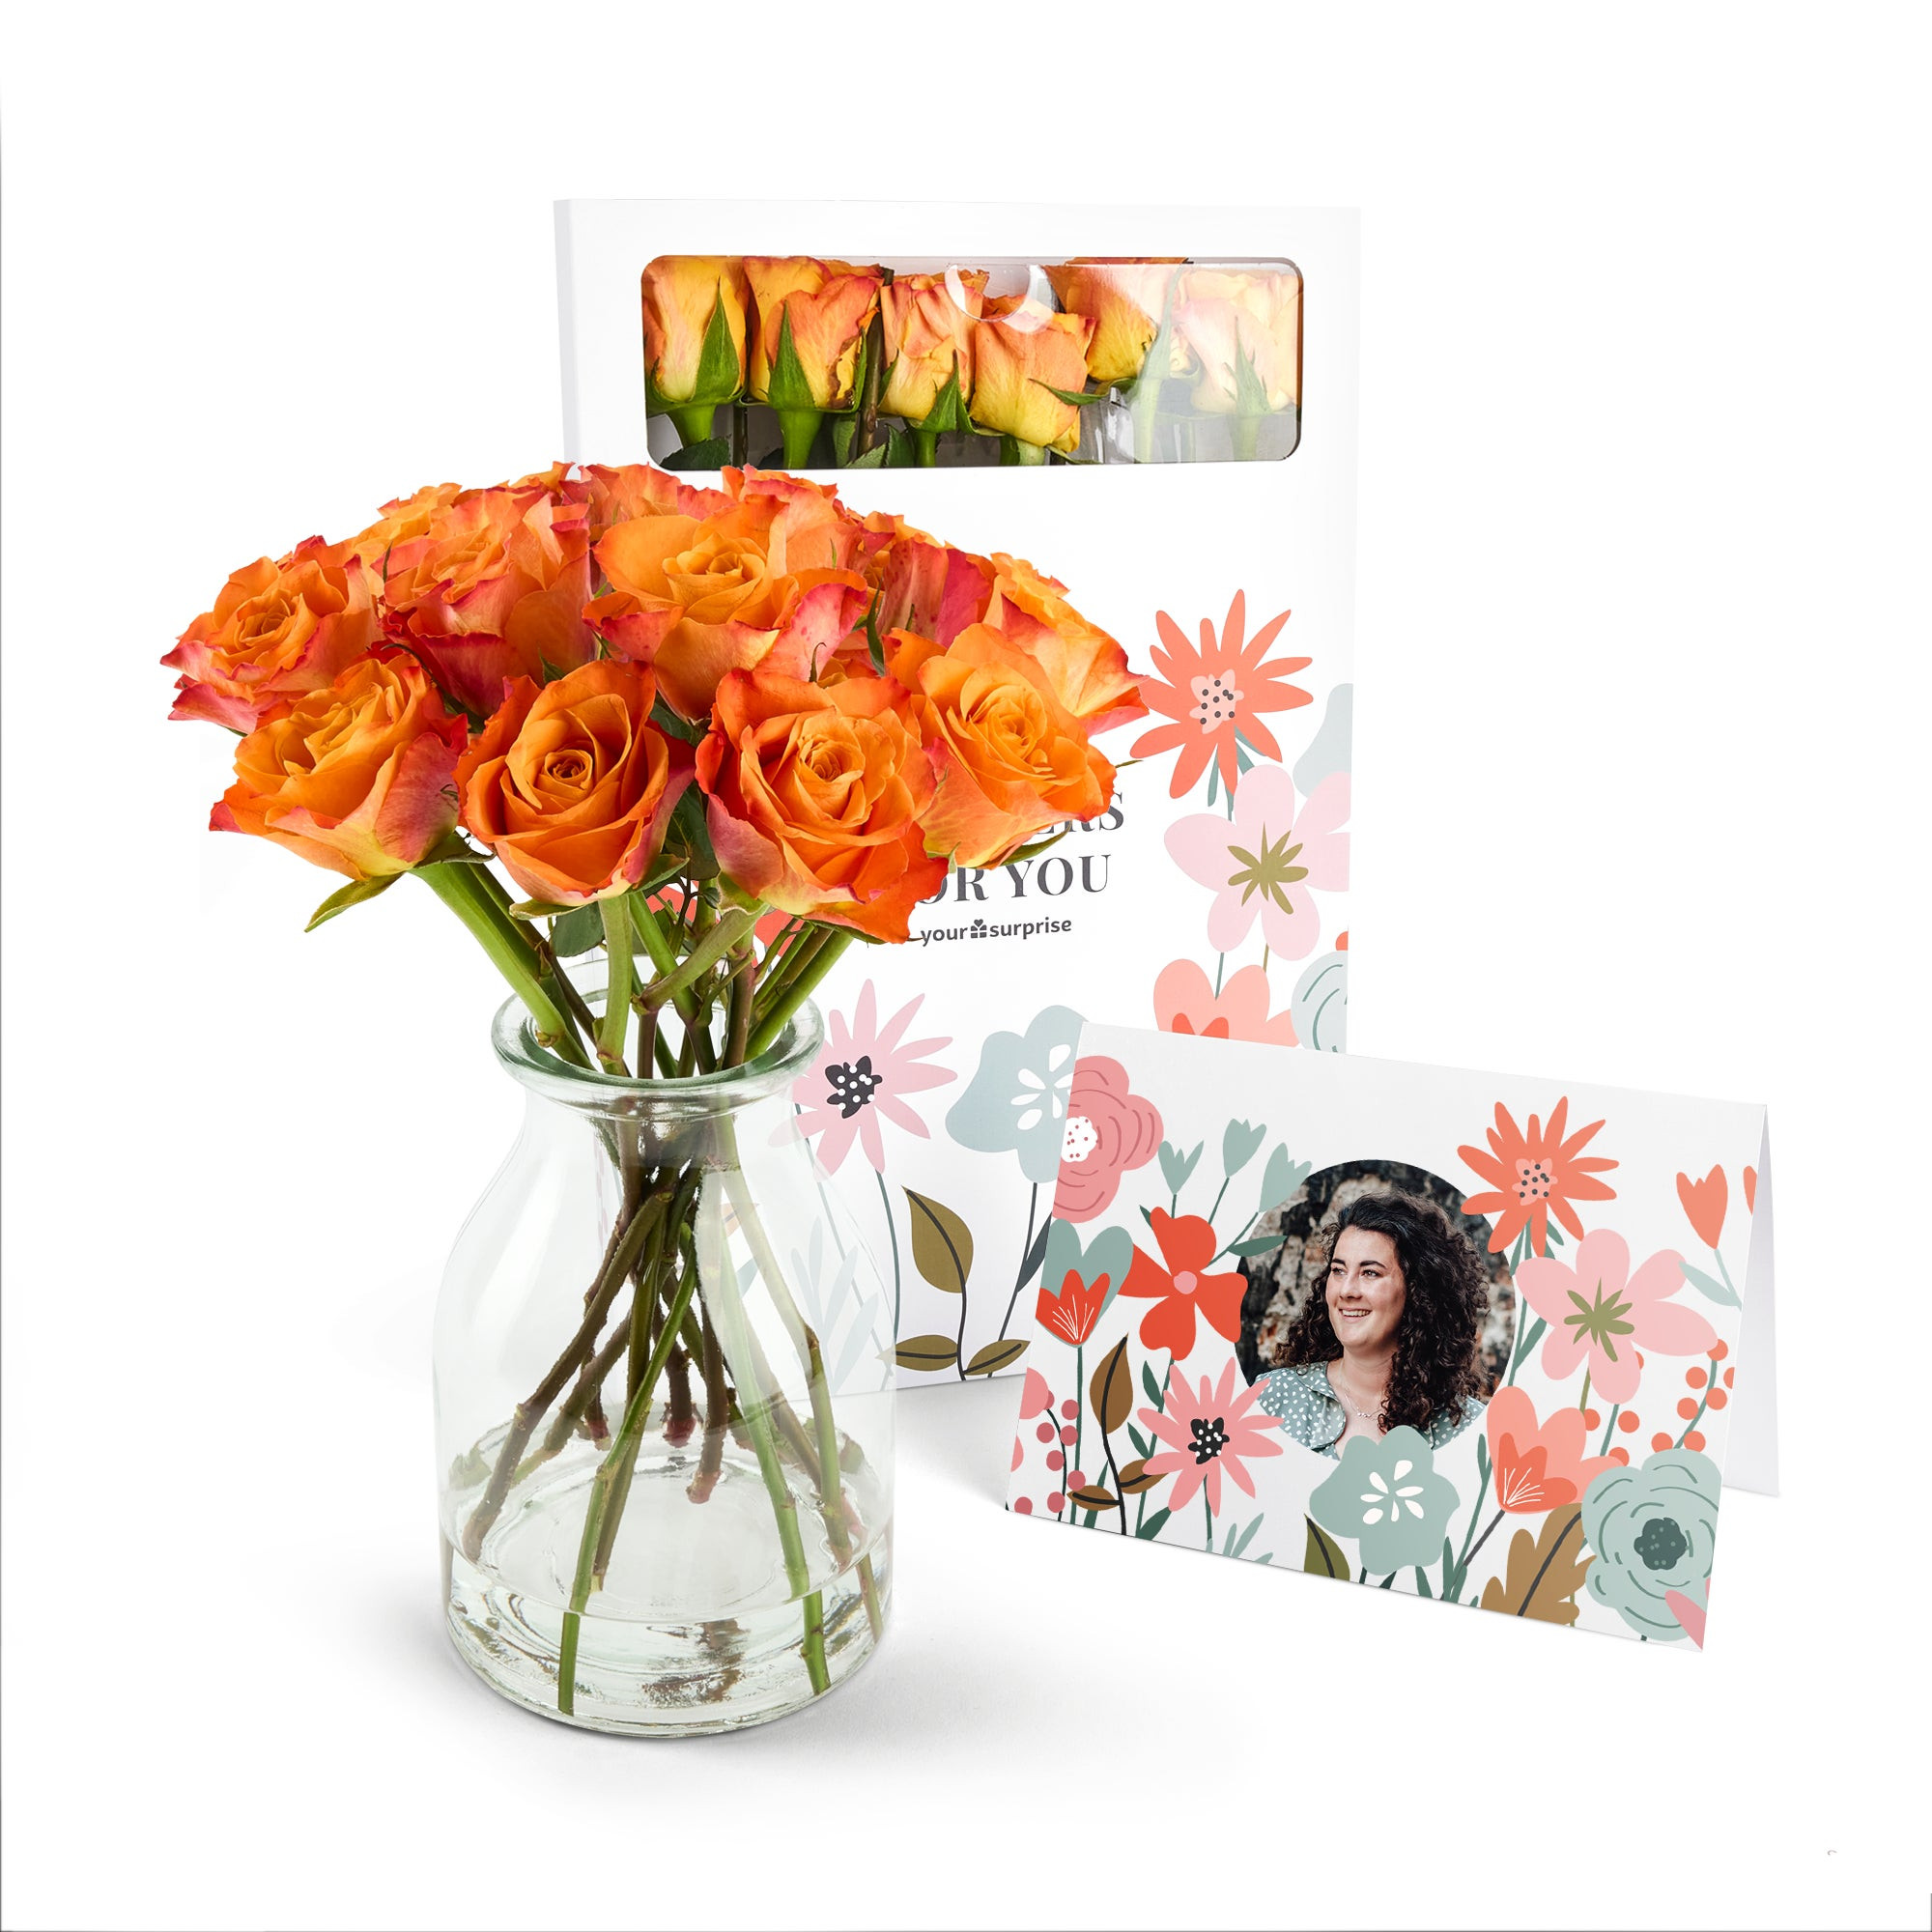 Brievenbusbloemen met persoonlijke kaart - Oranje rozen